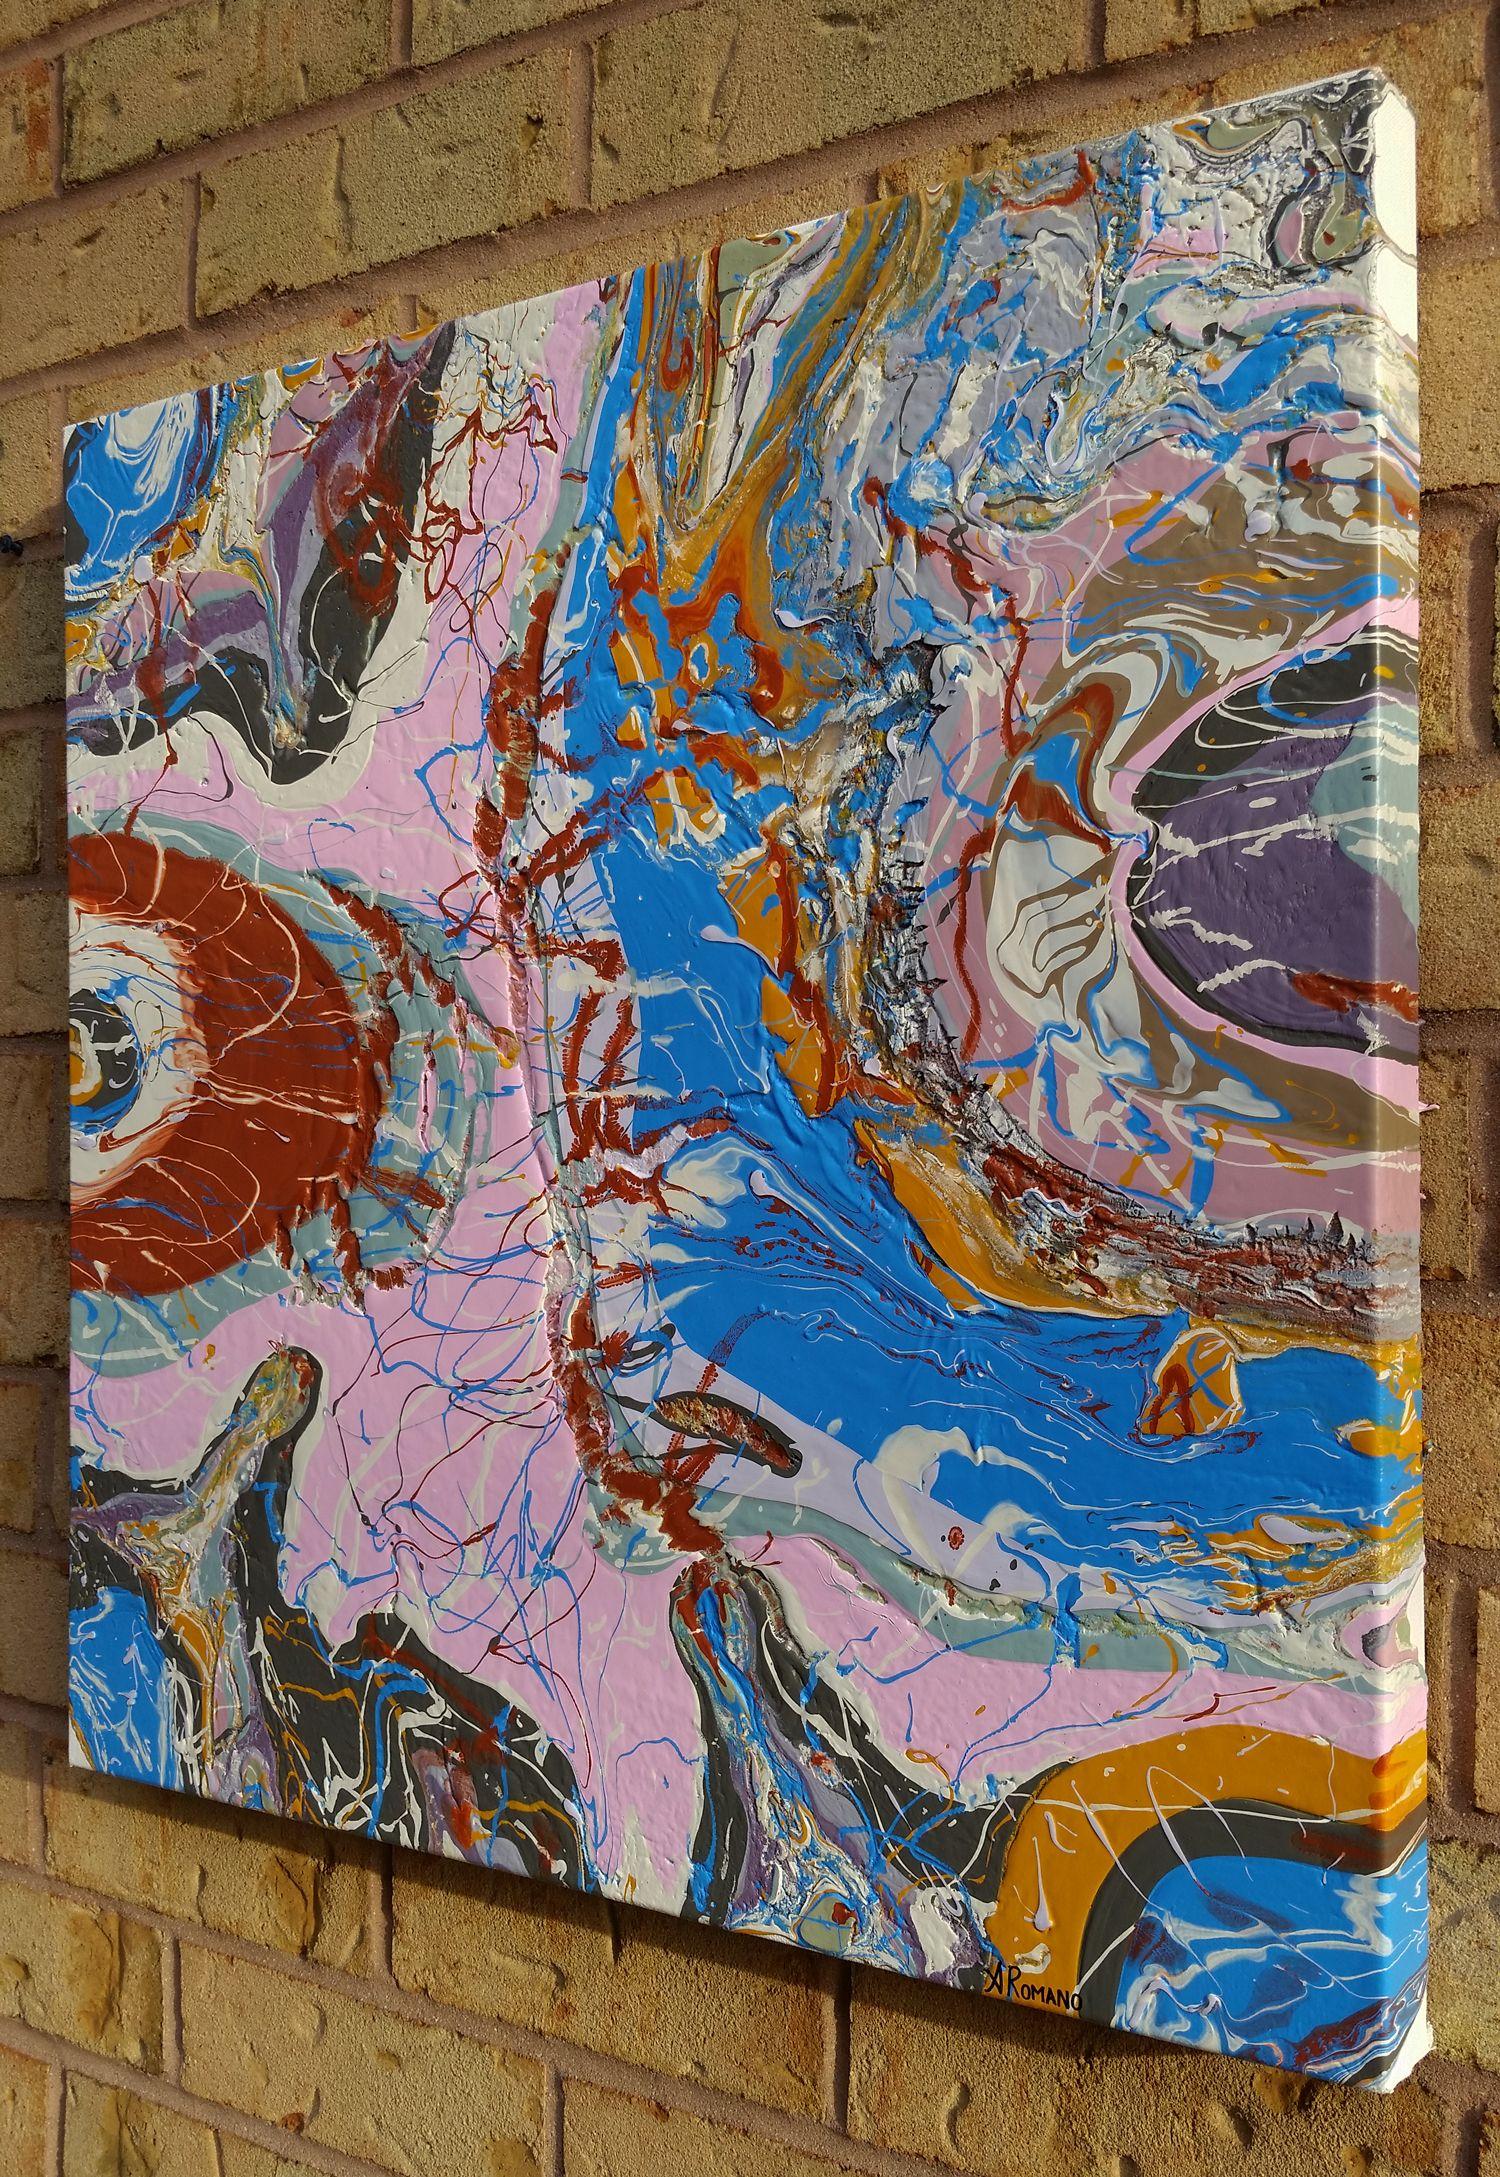 Tectonic Plates est une peinture abstraite texturée originale composée de couches épaisses de peinture acrylique superposées. Les acryliques épaisses ont créé un effet de craquelure naturelle dans certaines zones, ce qui me rappelle les plaques